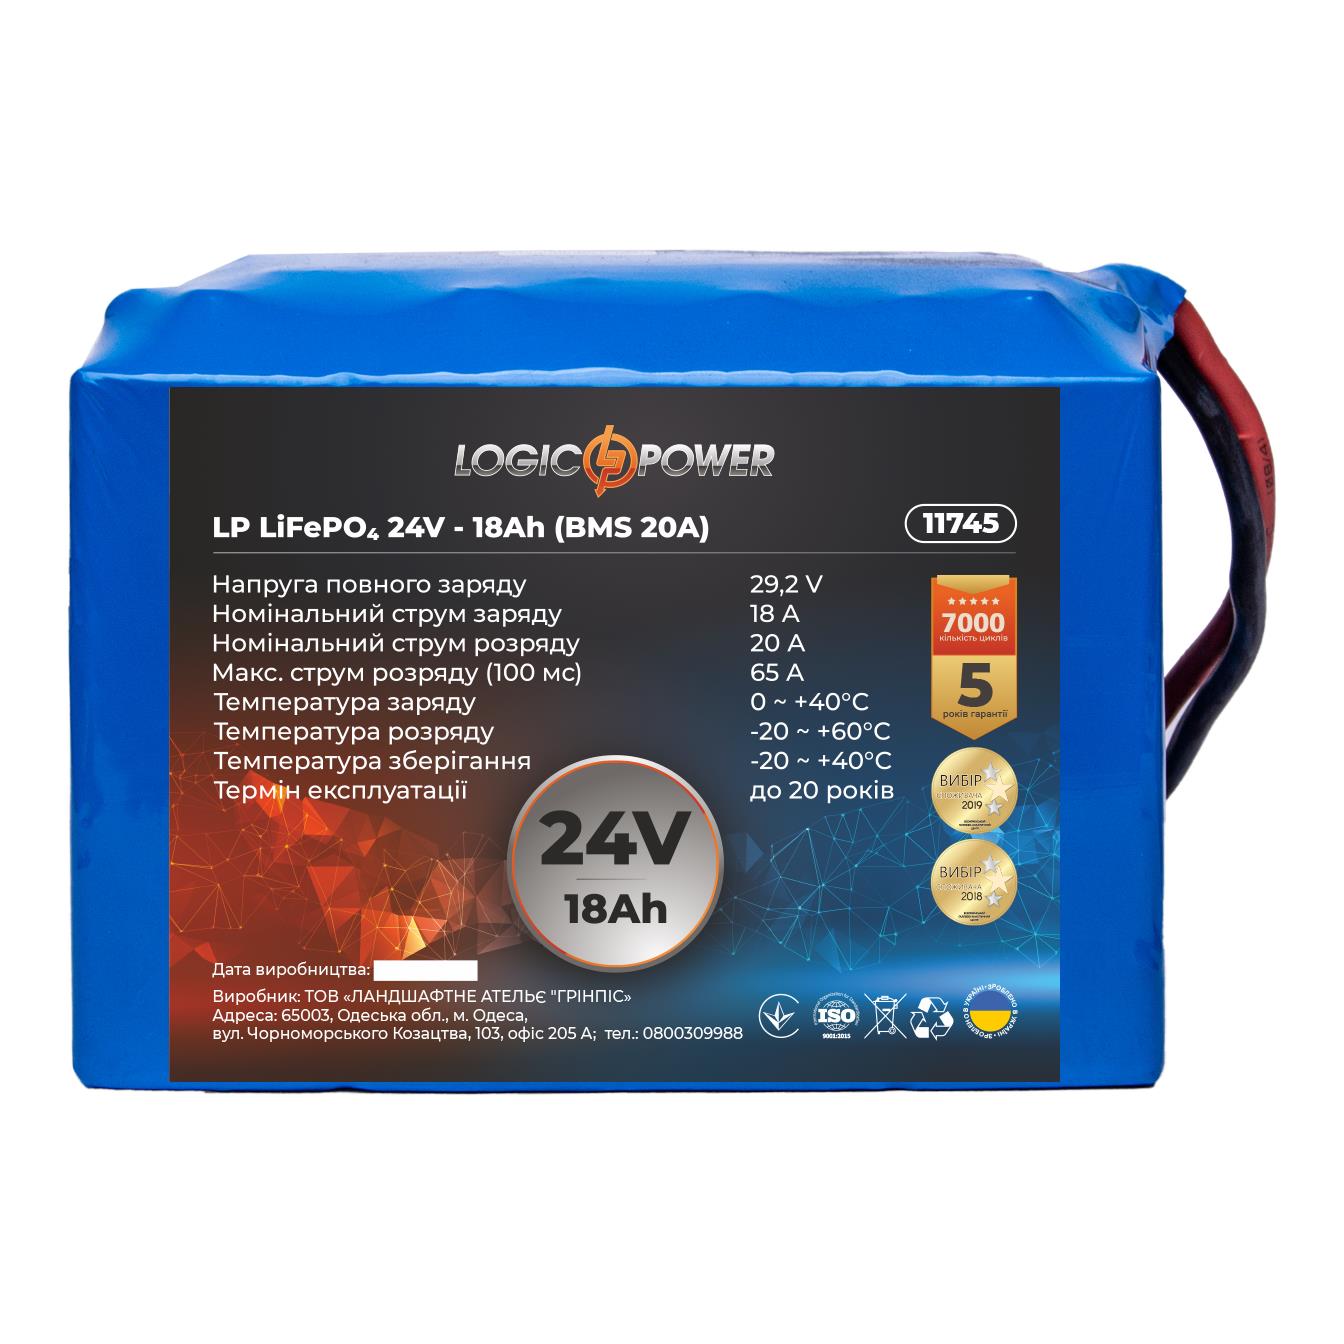 Аккумулятор литий-железо-фосфатный LogicPower LP LiFePO4 24V - 18 Ah (BMS 20A) (11745) в интернет-магазине, главное фото